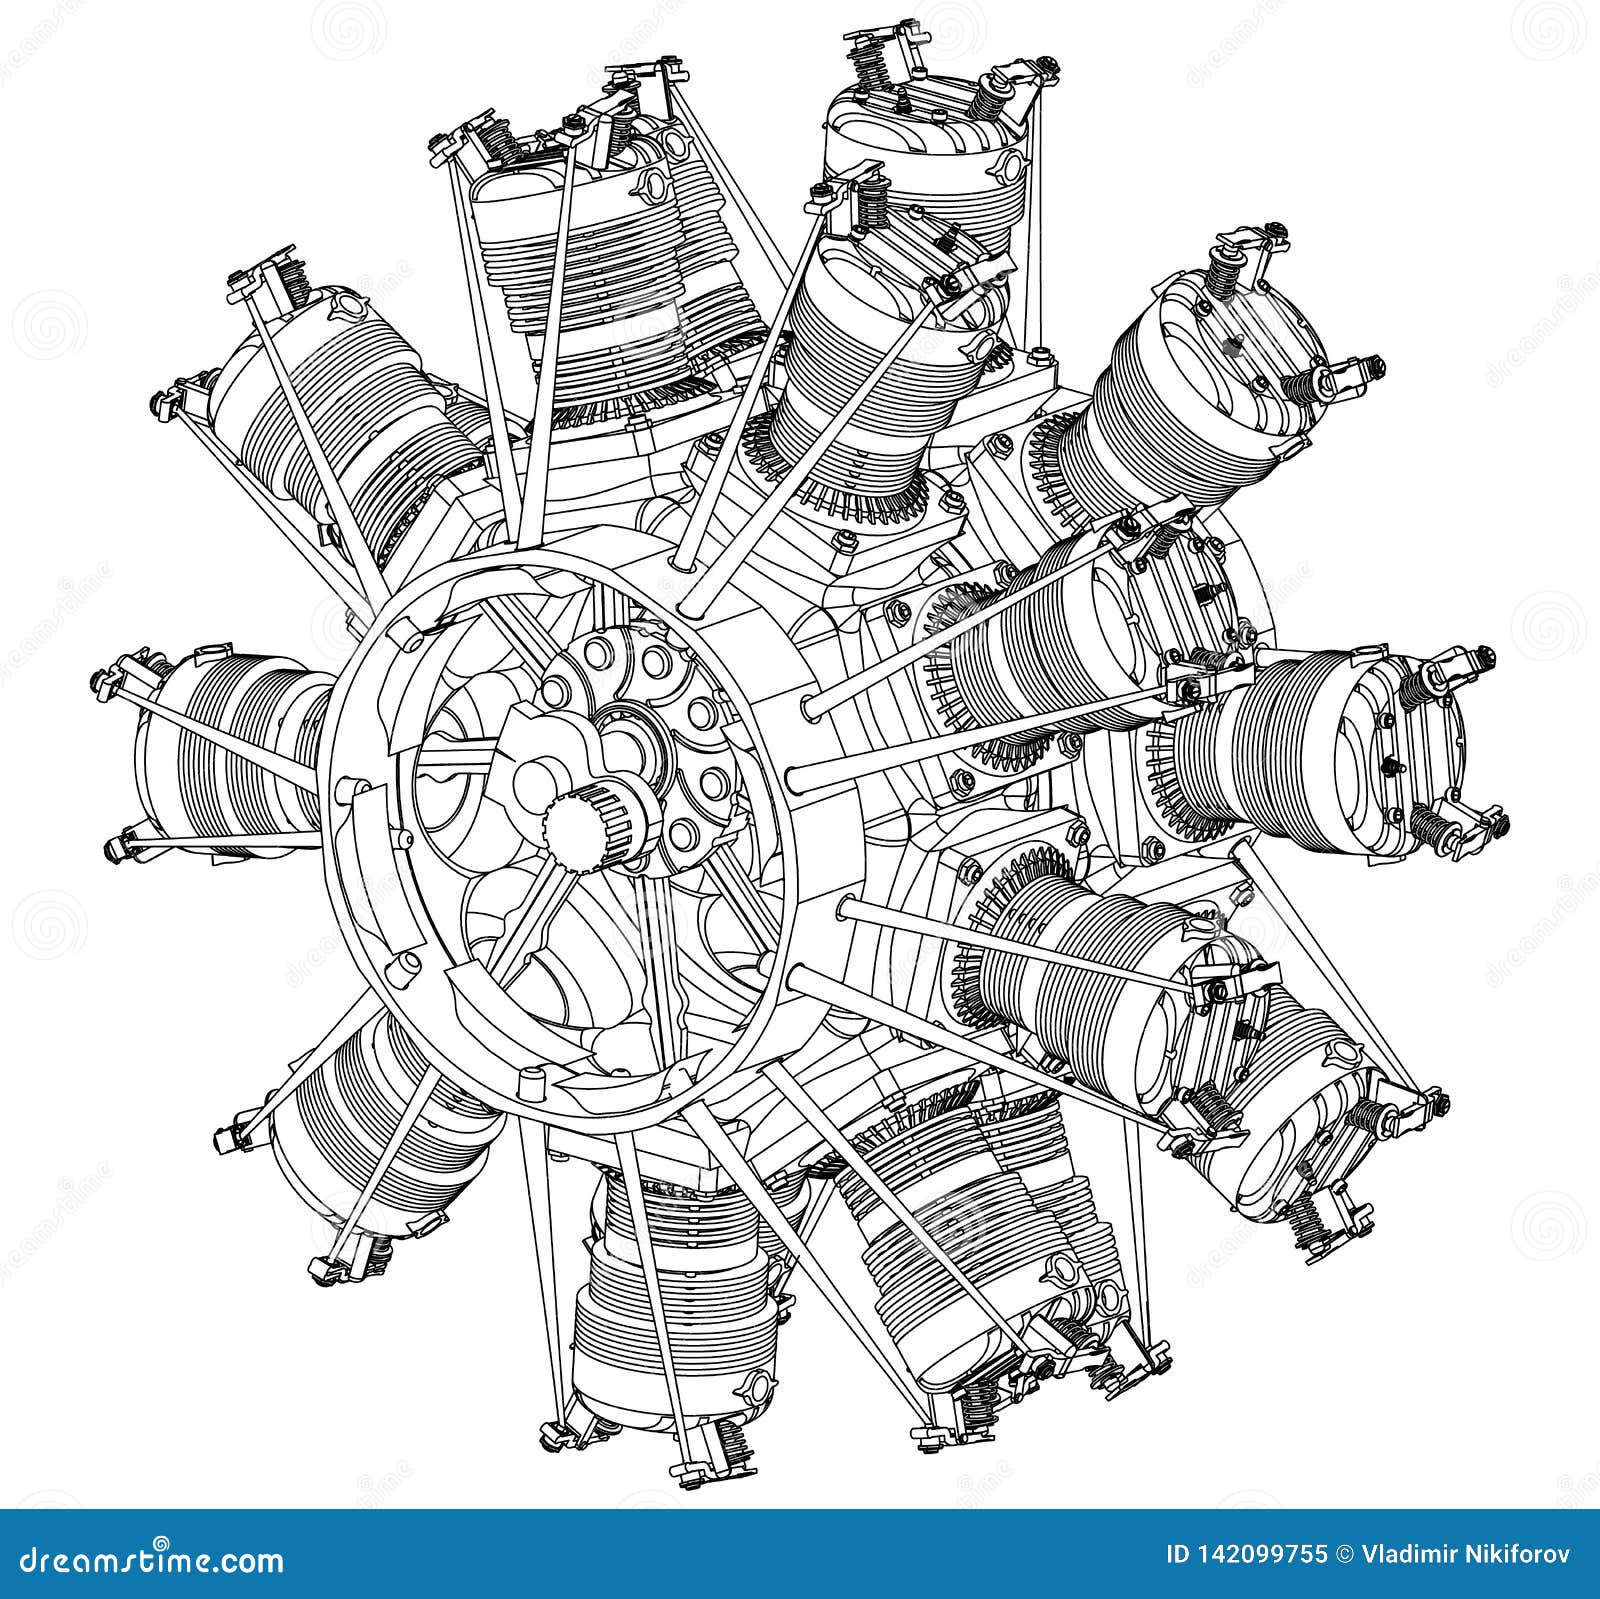 File:Desenho de motor do Dirigível Nº1 - 1-13772-0000-0000, Acervo do Museu  Paulista da USP.jpg - Wikimedia Commons